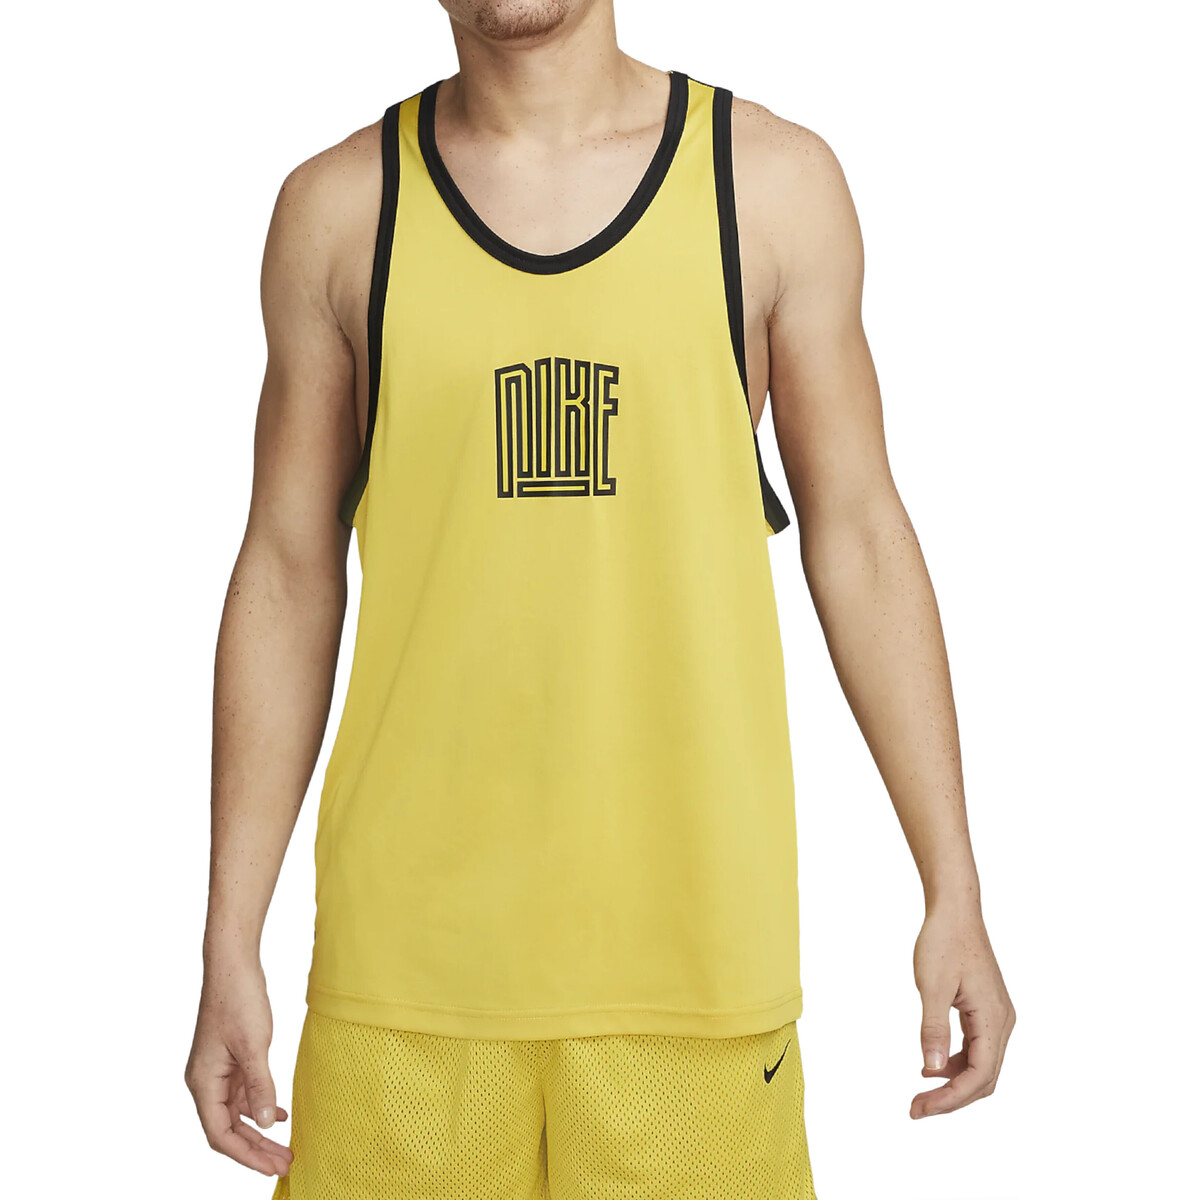 Abbigliamento Uomo Top / T-shirt senza maniche Nike DH7136 Giallo